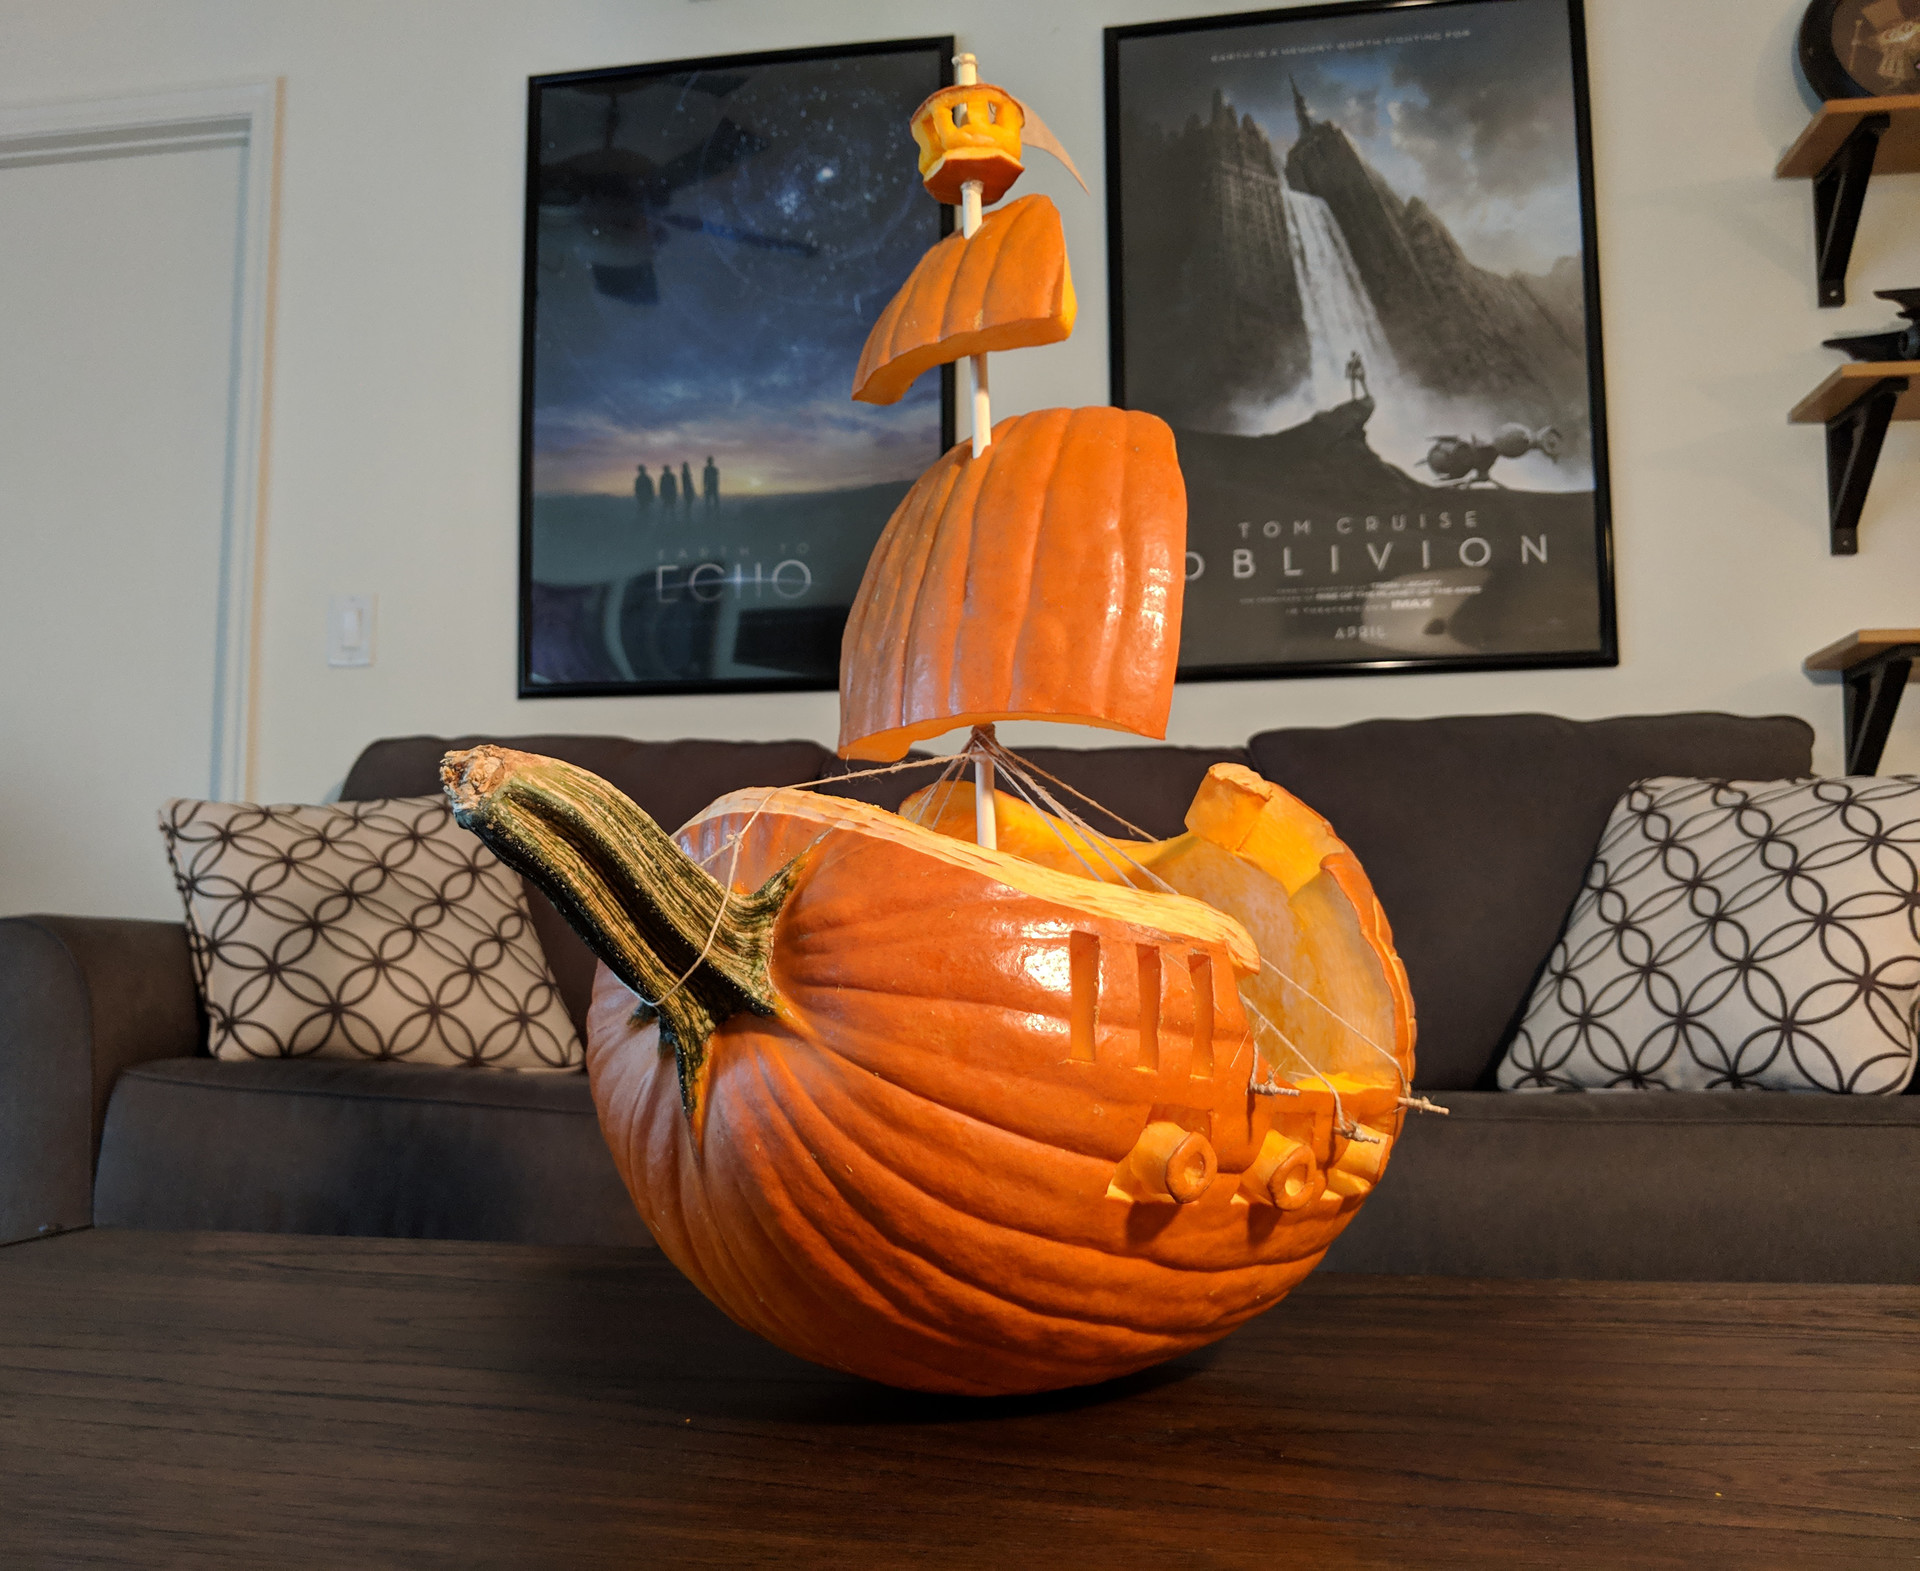 pirate ship template pumpkin